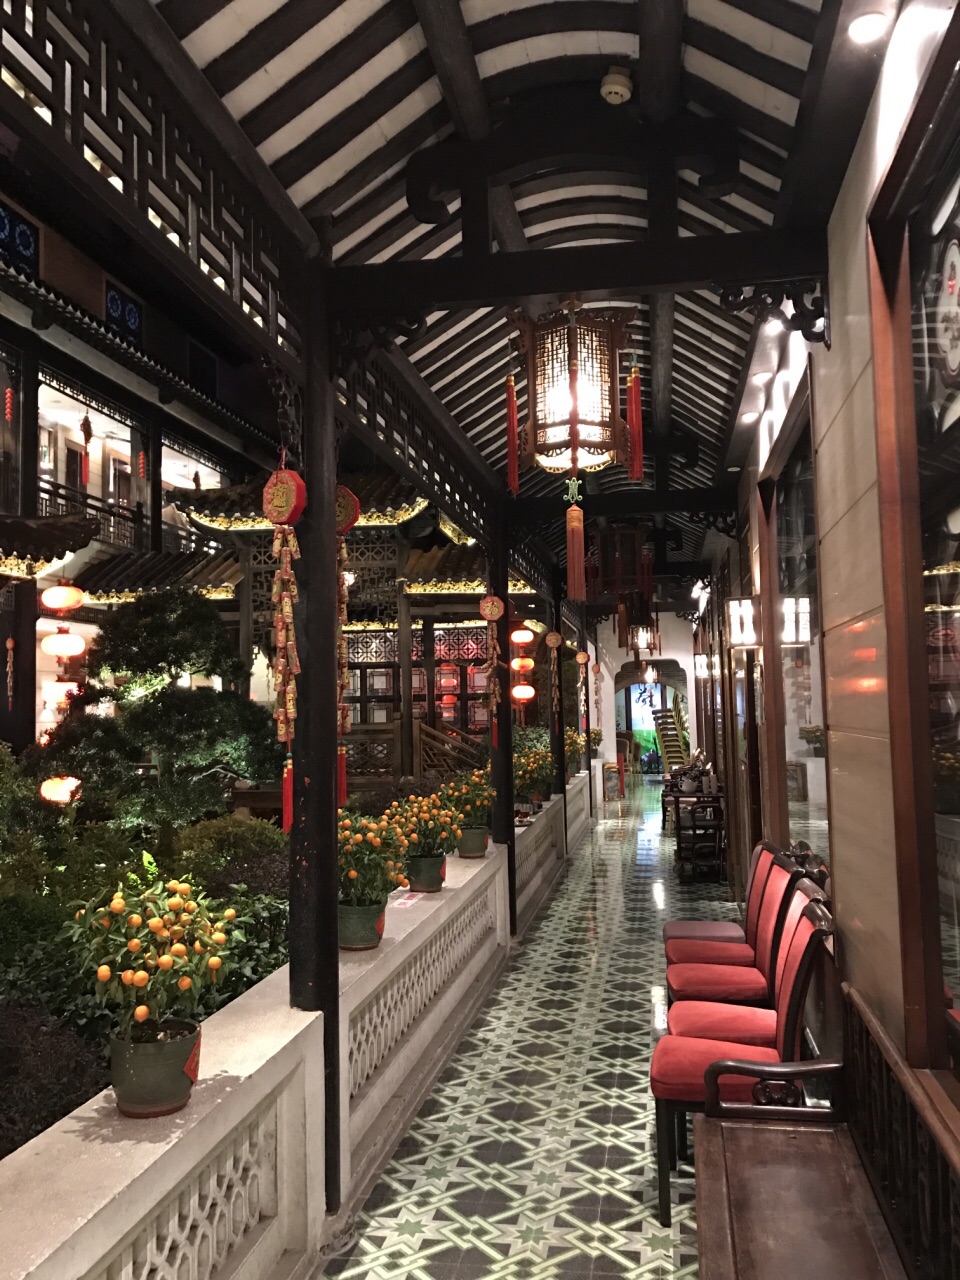 【携程美食林】广州北园酒家(小北路店)餐馆,广州小北路的北园酒家,是